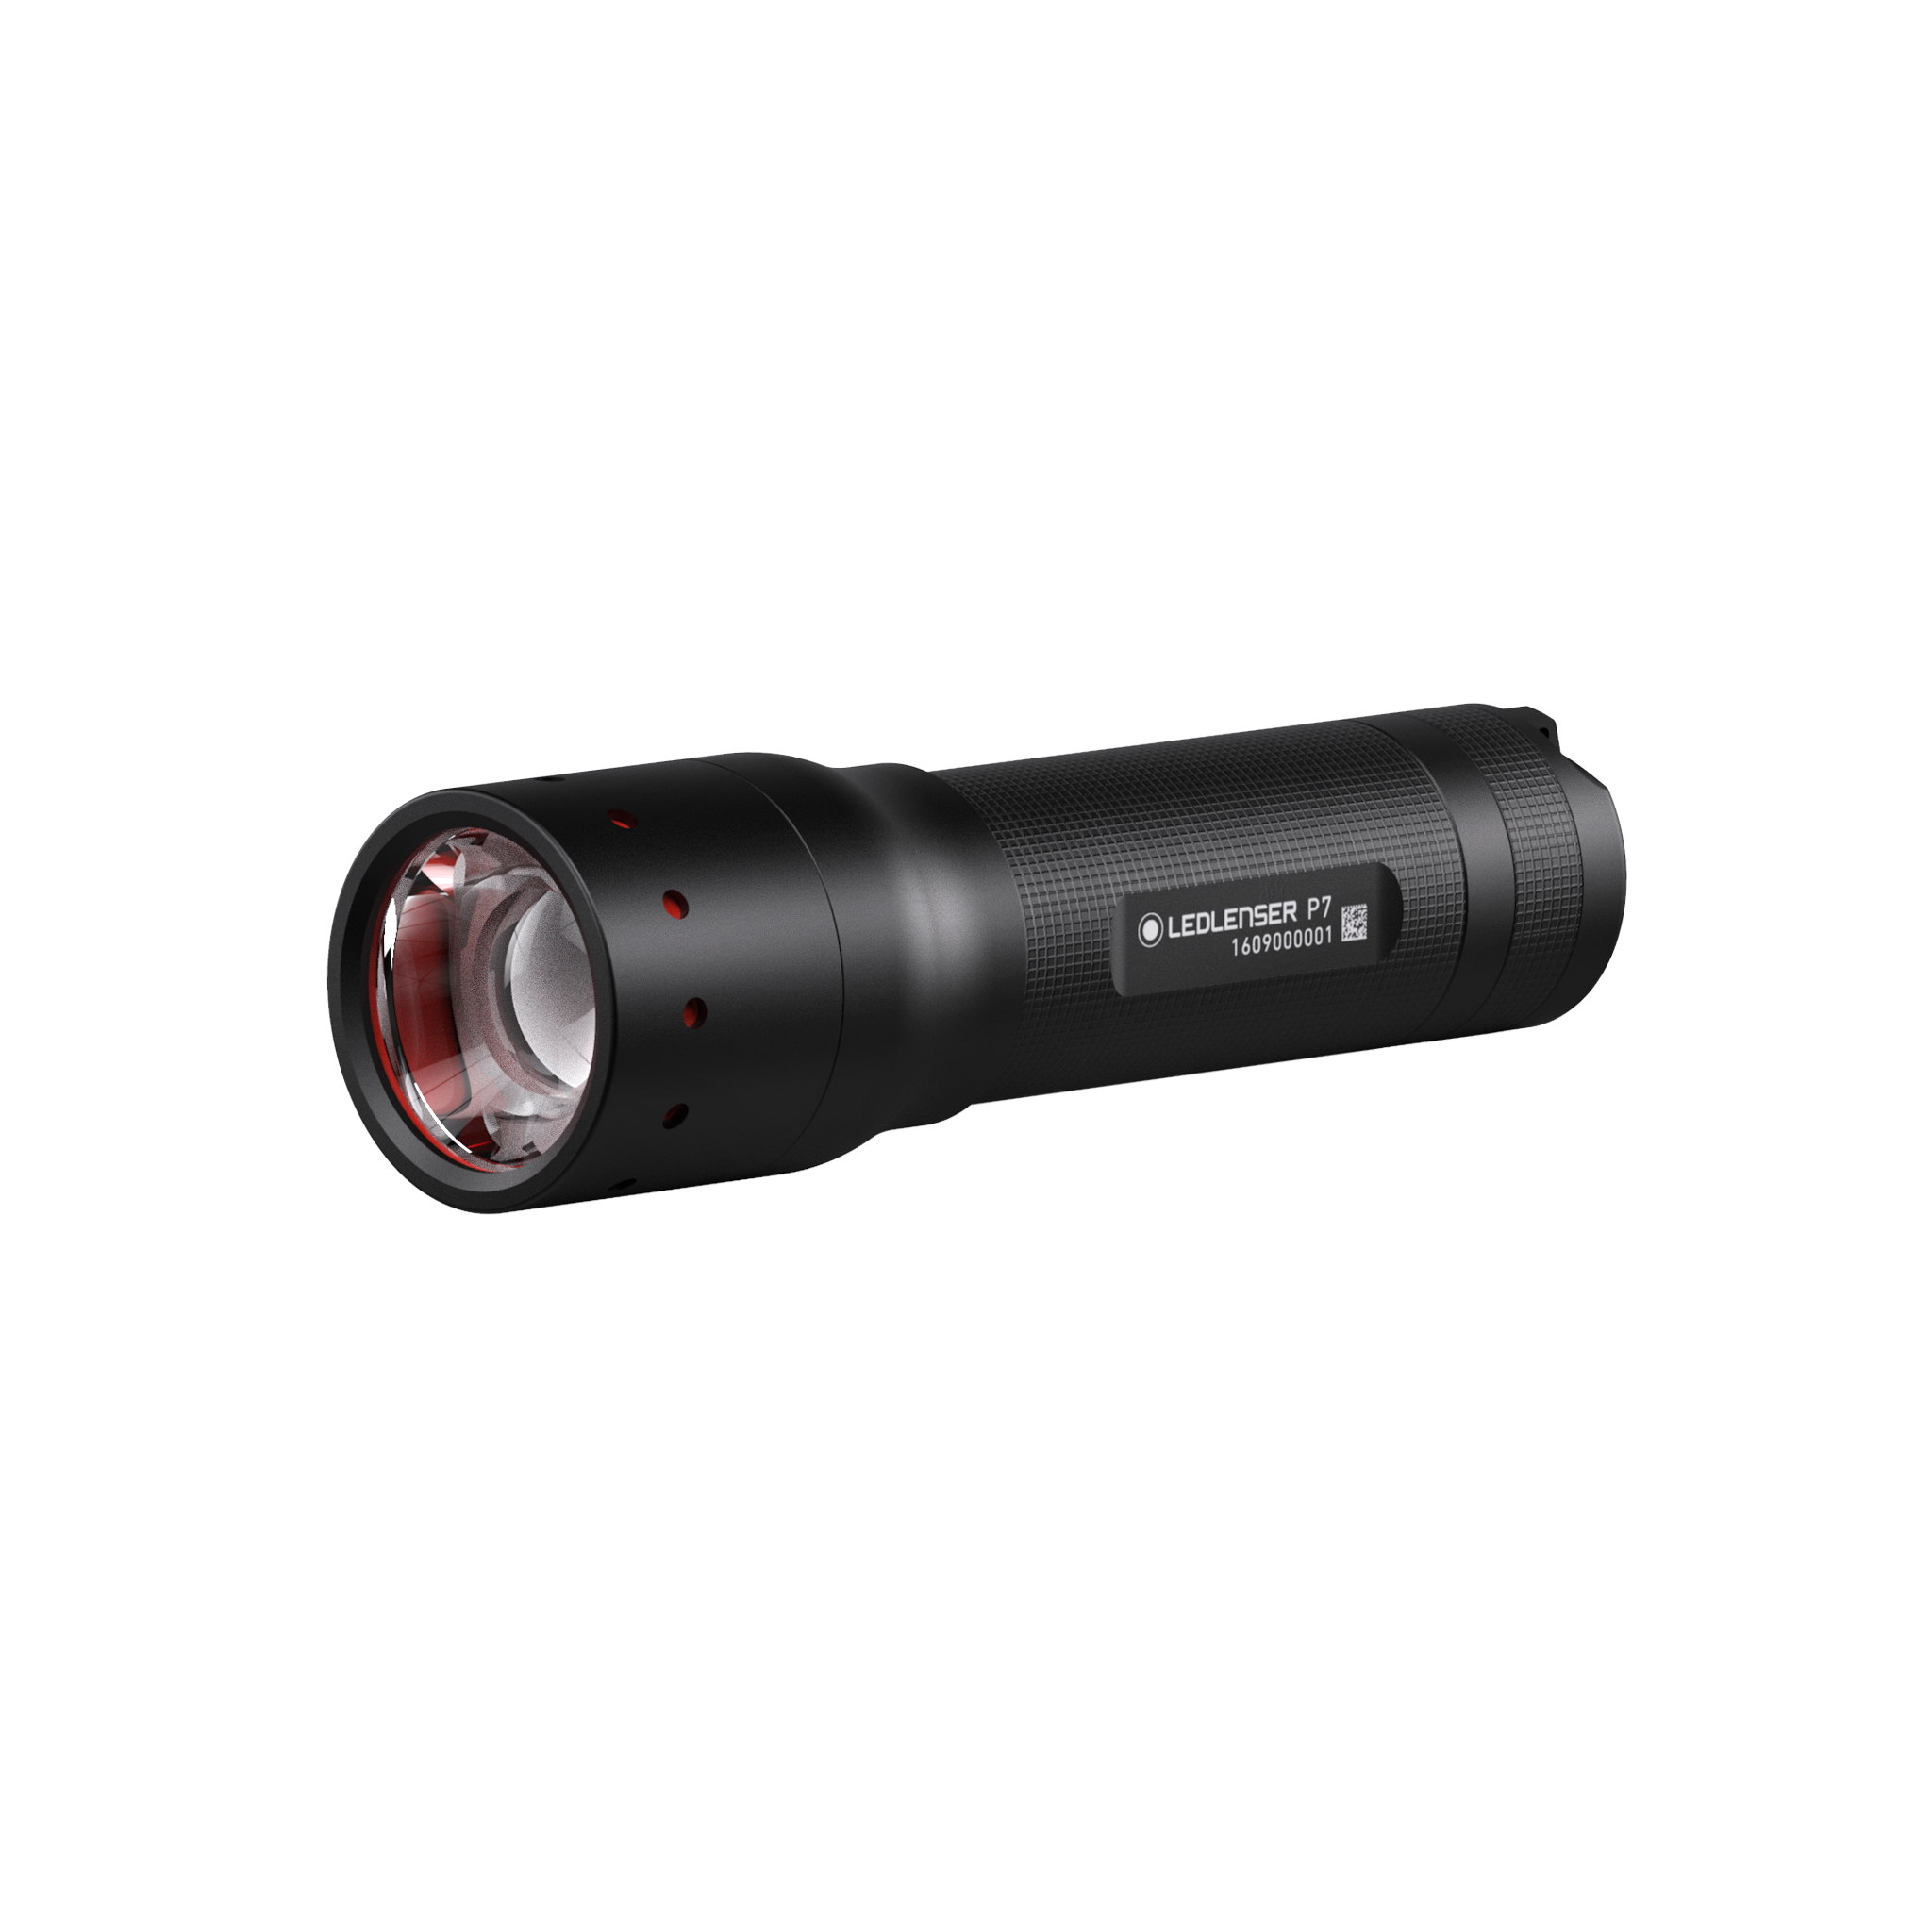 kompression sammenbrud Atlantic Led Lenser P7 | Shop Ledlenser P7 Flashlight | Ledlenser USA